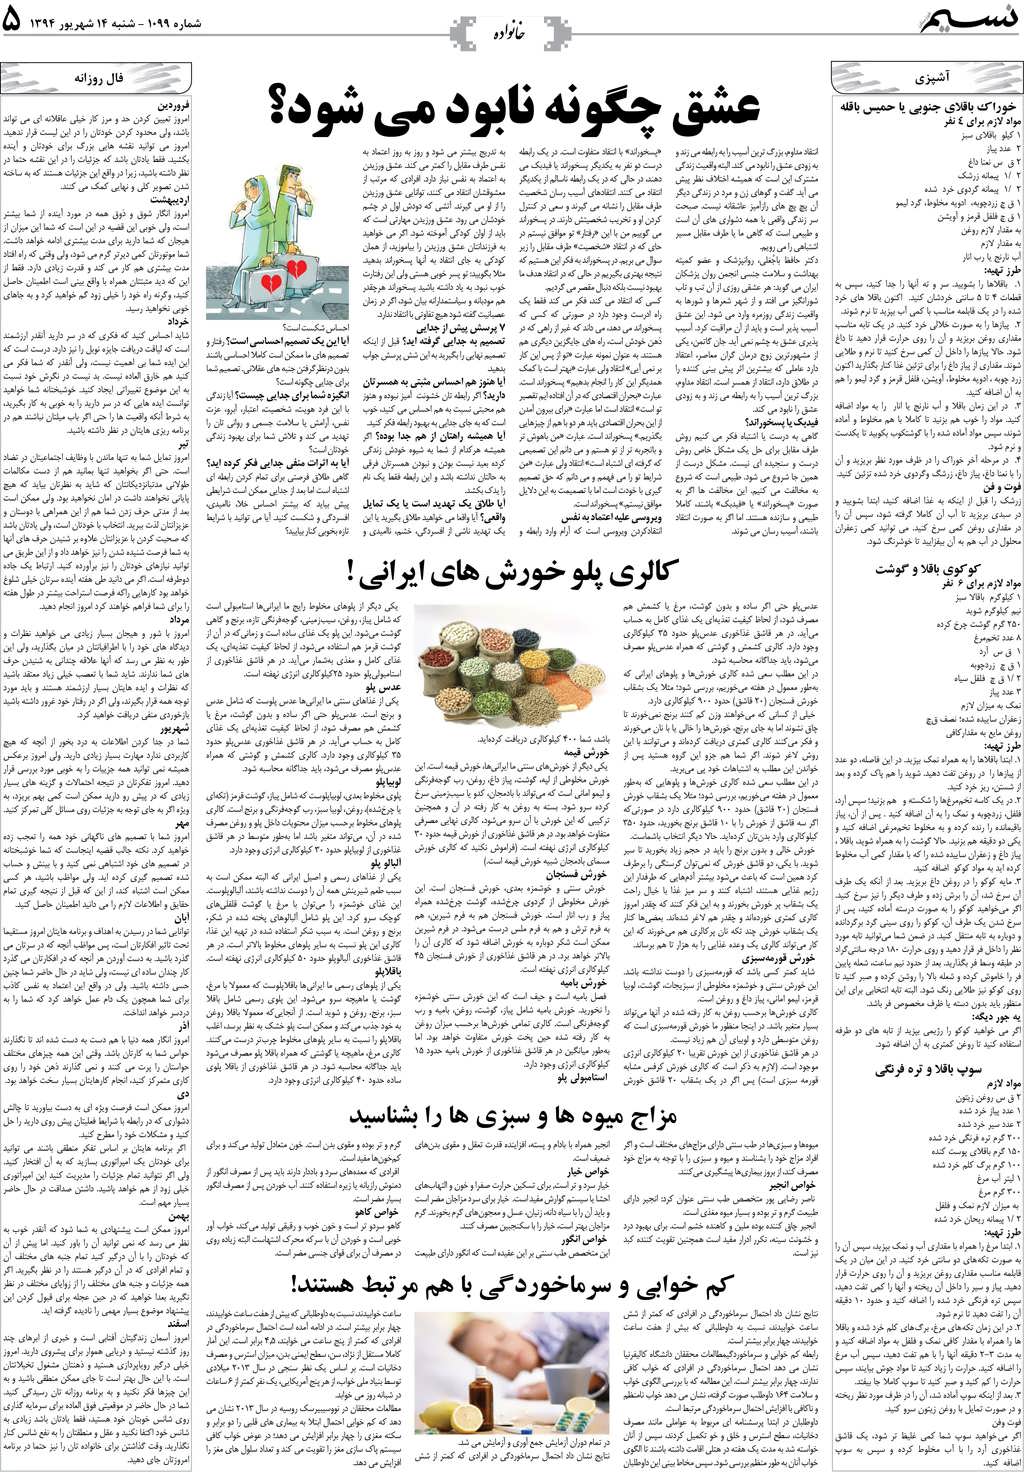 صفحه خانواده روزنامه نسیم شماره 1099